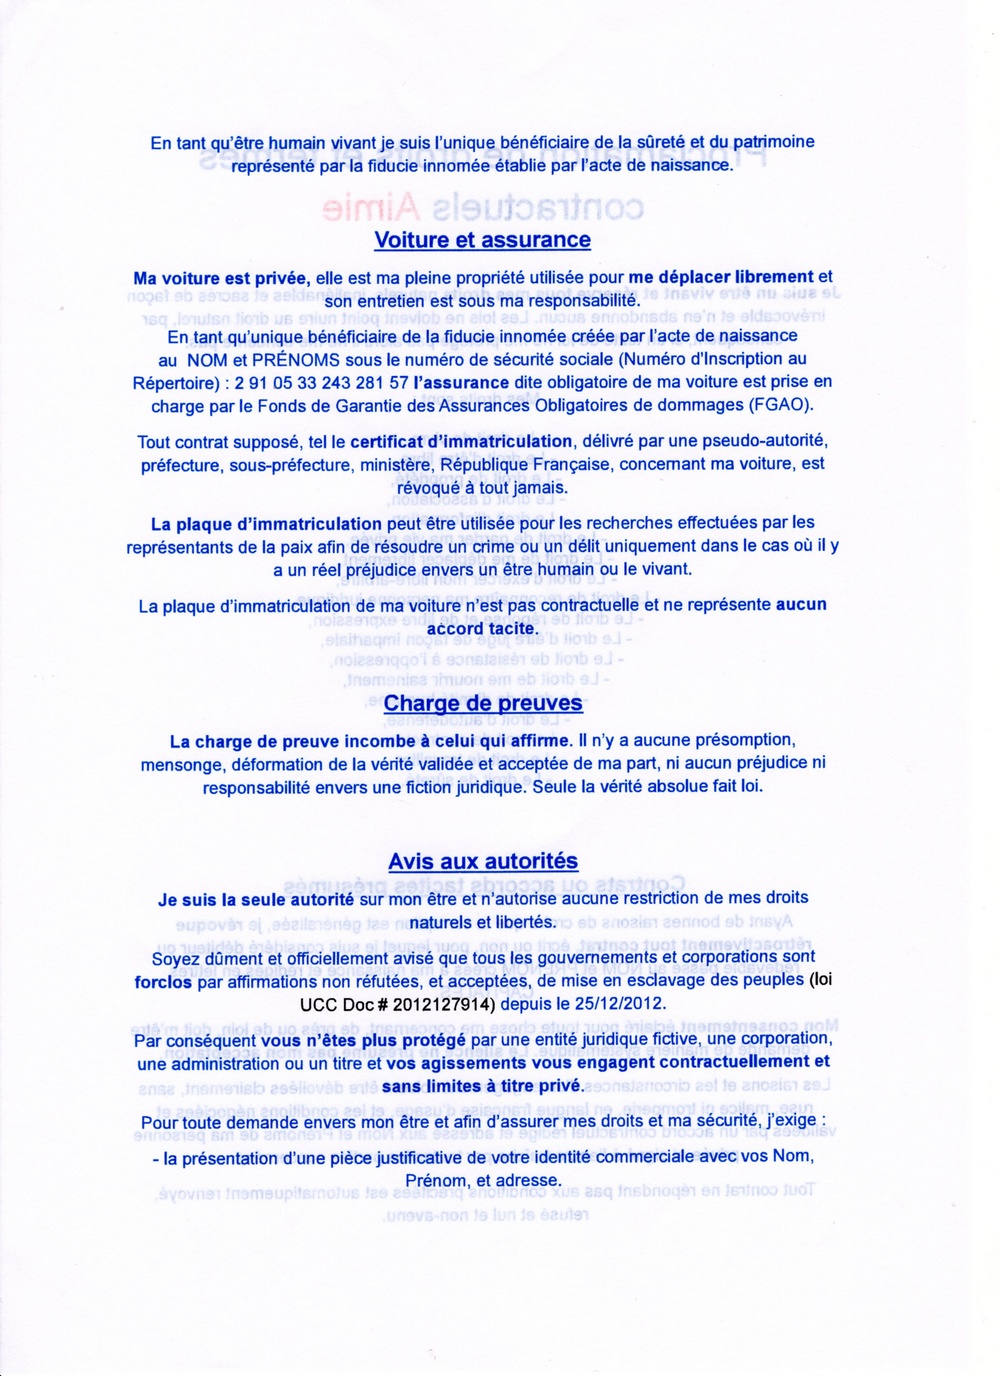 Aimie Renaud 2 proclamation des droits et termes contractuels002